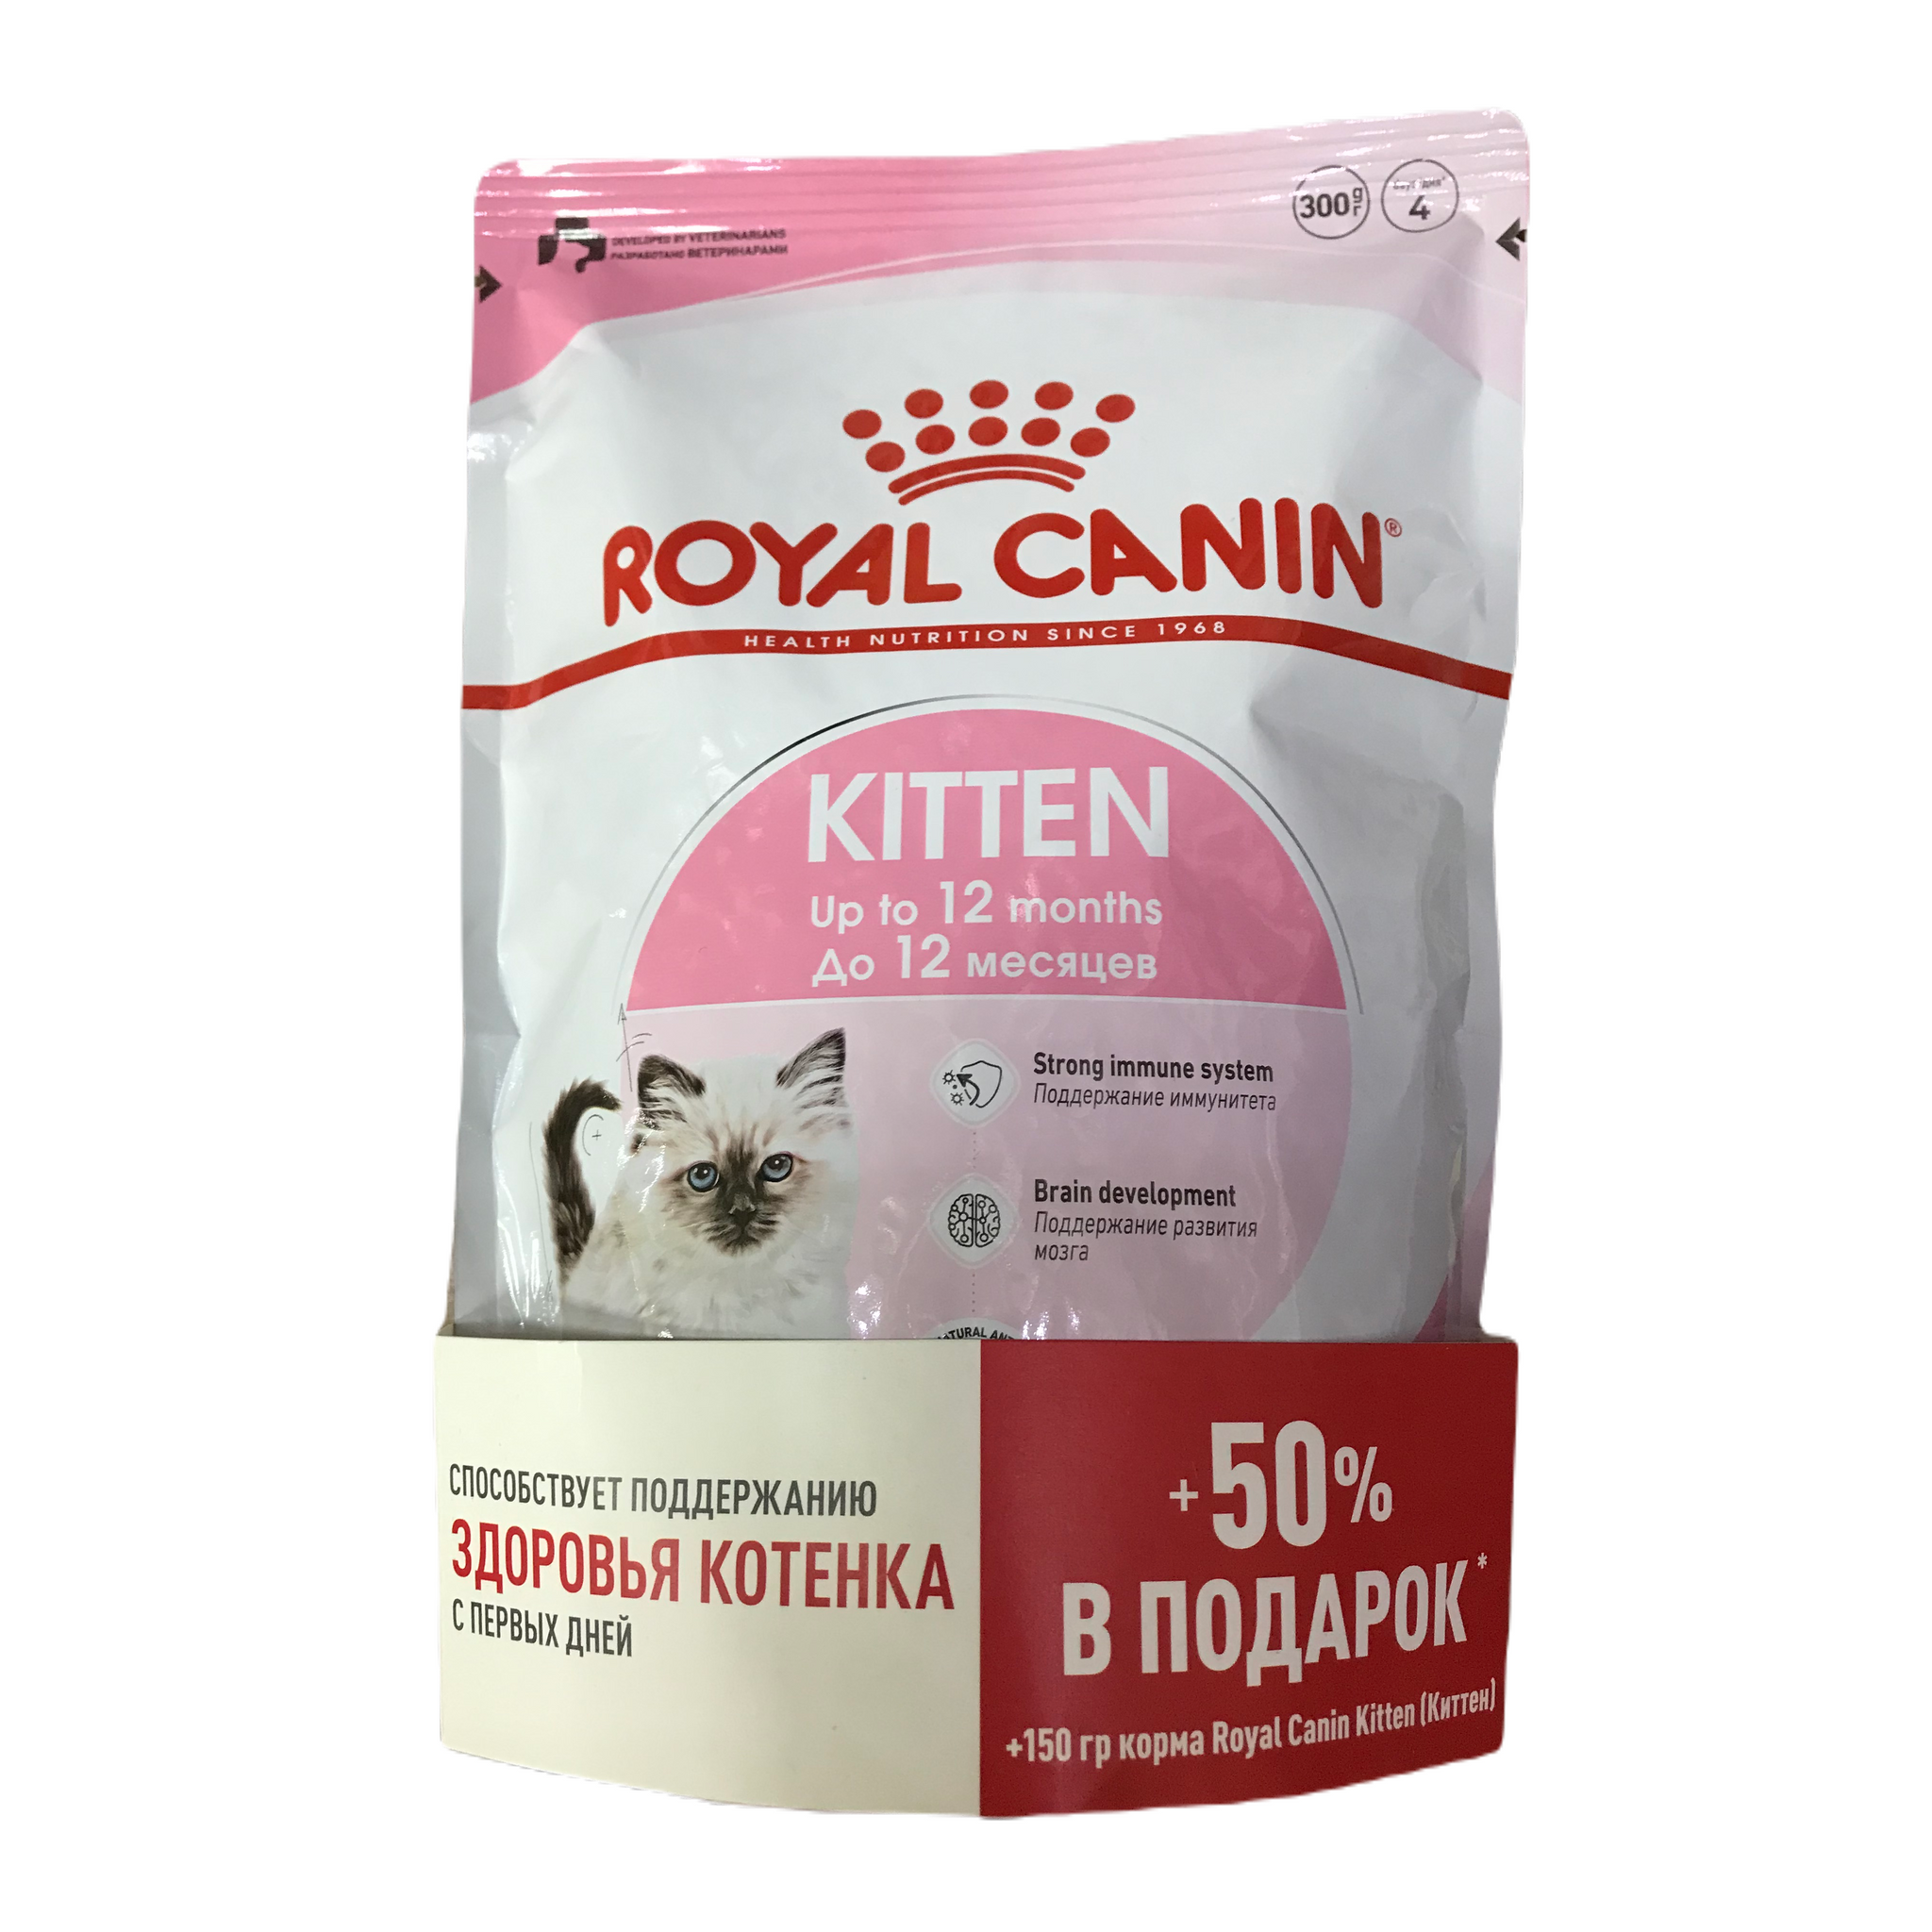 Купить роял канин 7. Роял Канин Киттен. Royal Canin Baby Cat сухой 300. Royal Canin Kitten до 12 месяцев 400 гр. Royal Canin Kitten + 4 пауча по 85 г в ассортименте в подарок.